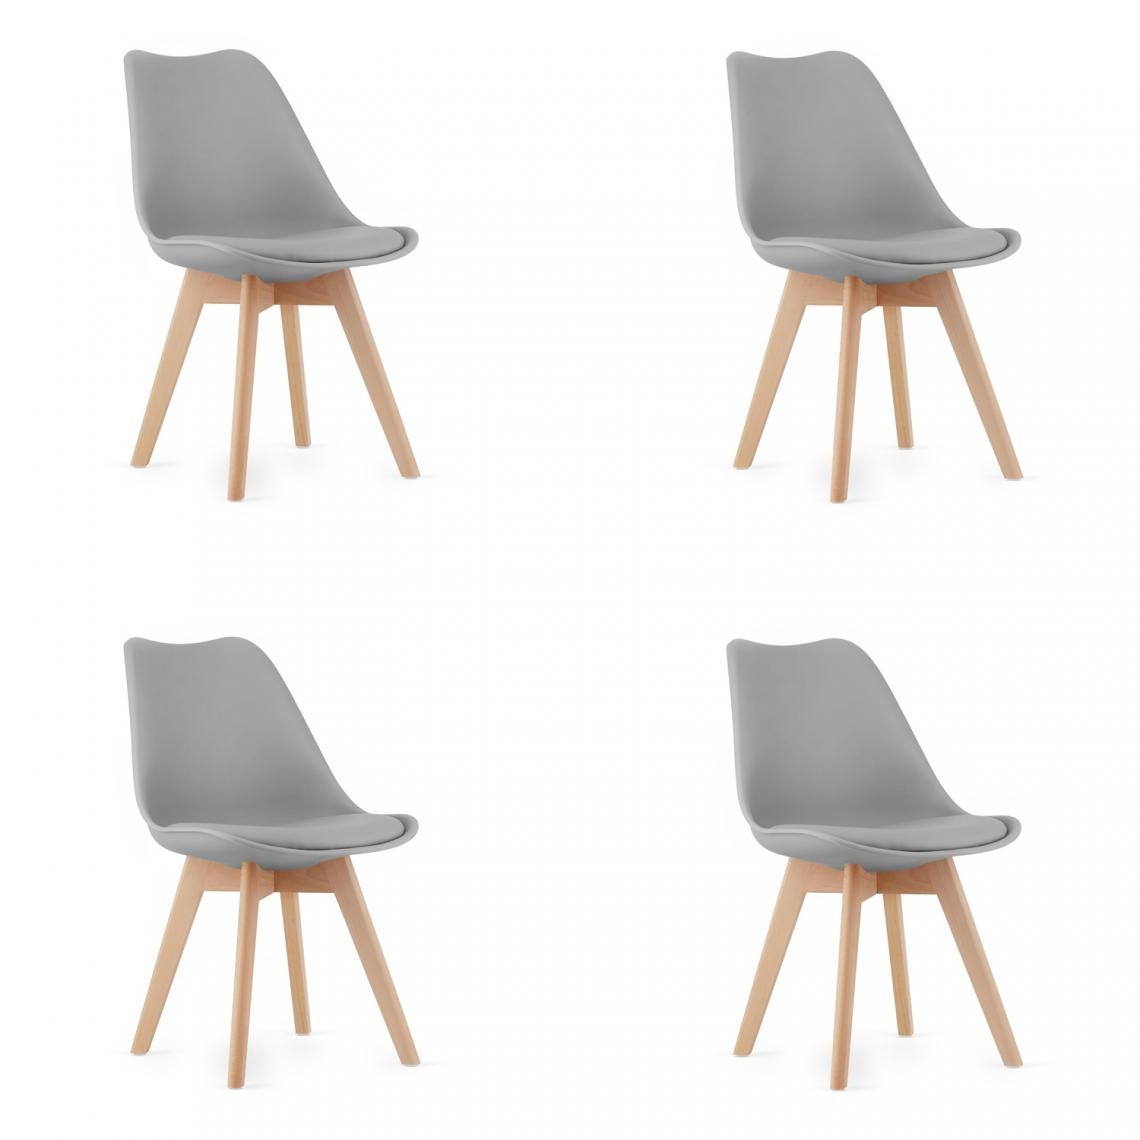 Hucoco - MARDI - Lot de 4 chaises style moderne salle à manger/cuisine - 82x48x43 cm - Chaise de salle à manger - Gris - Chaises